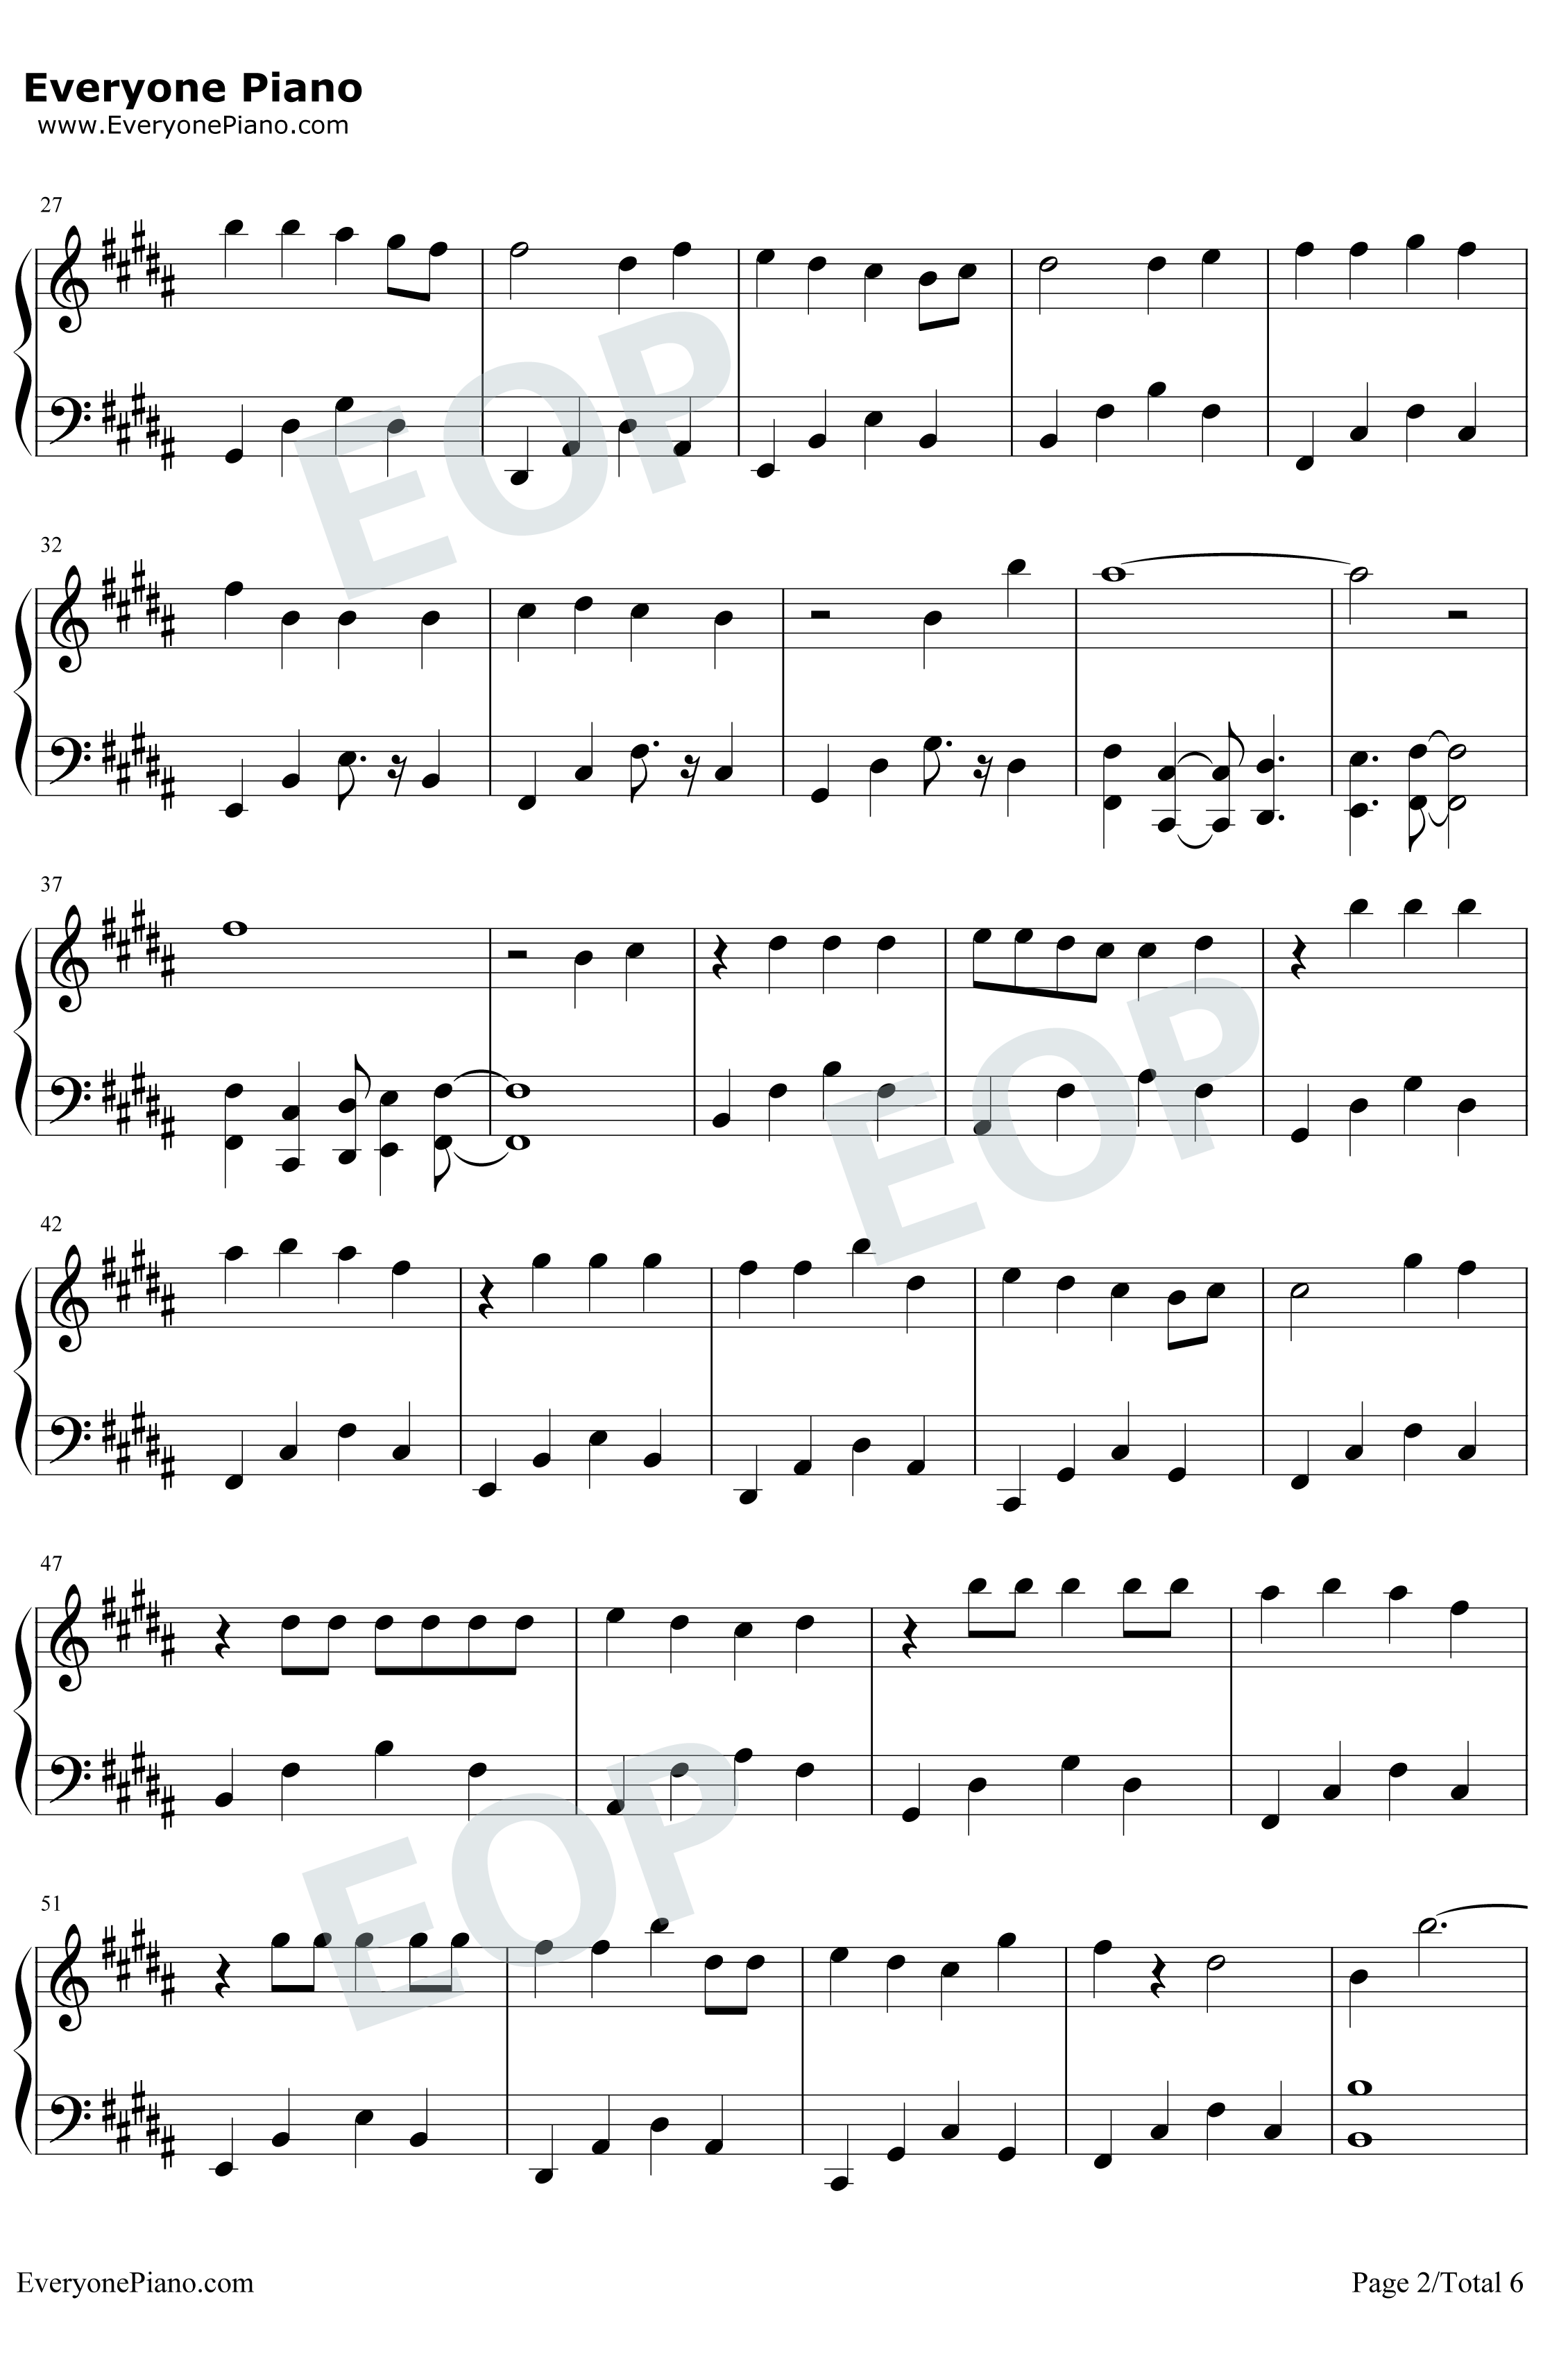 ジコチュー乃版本46钢琴谱-乃木坂462